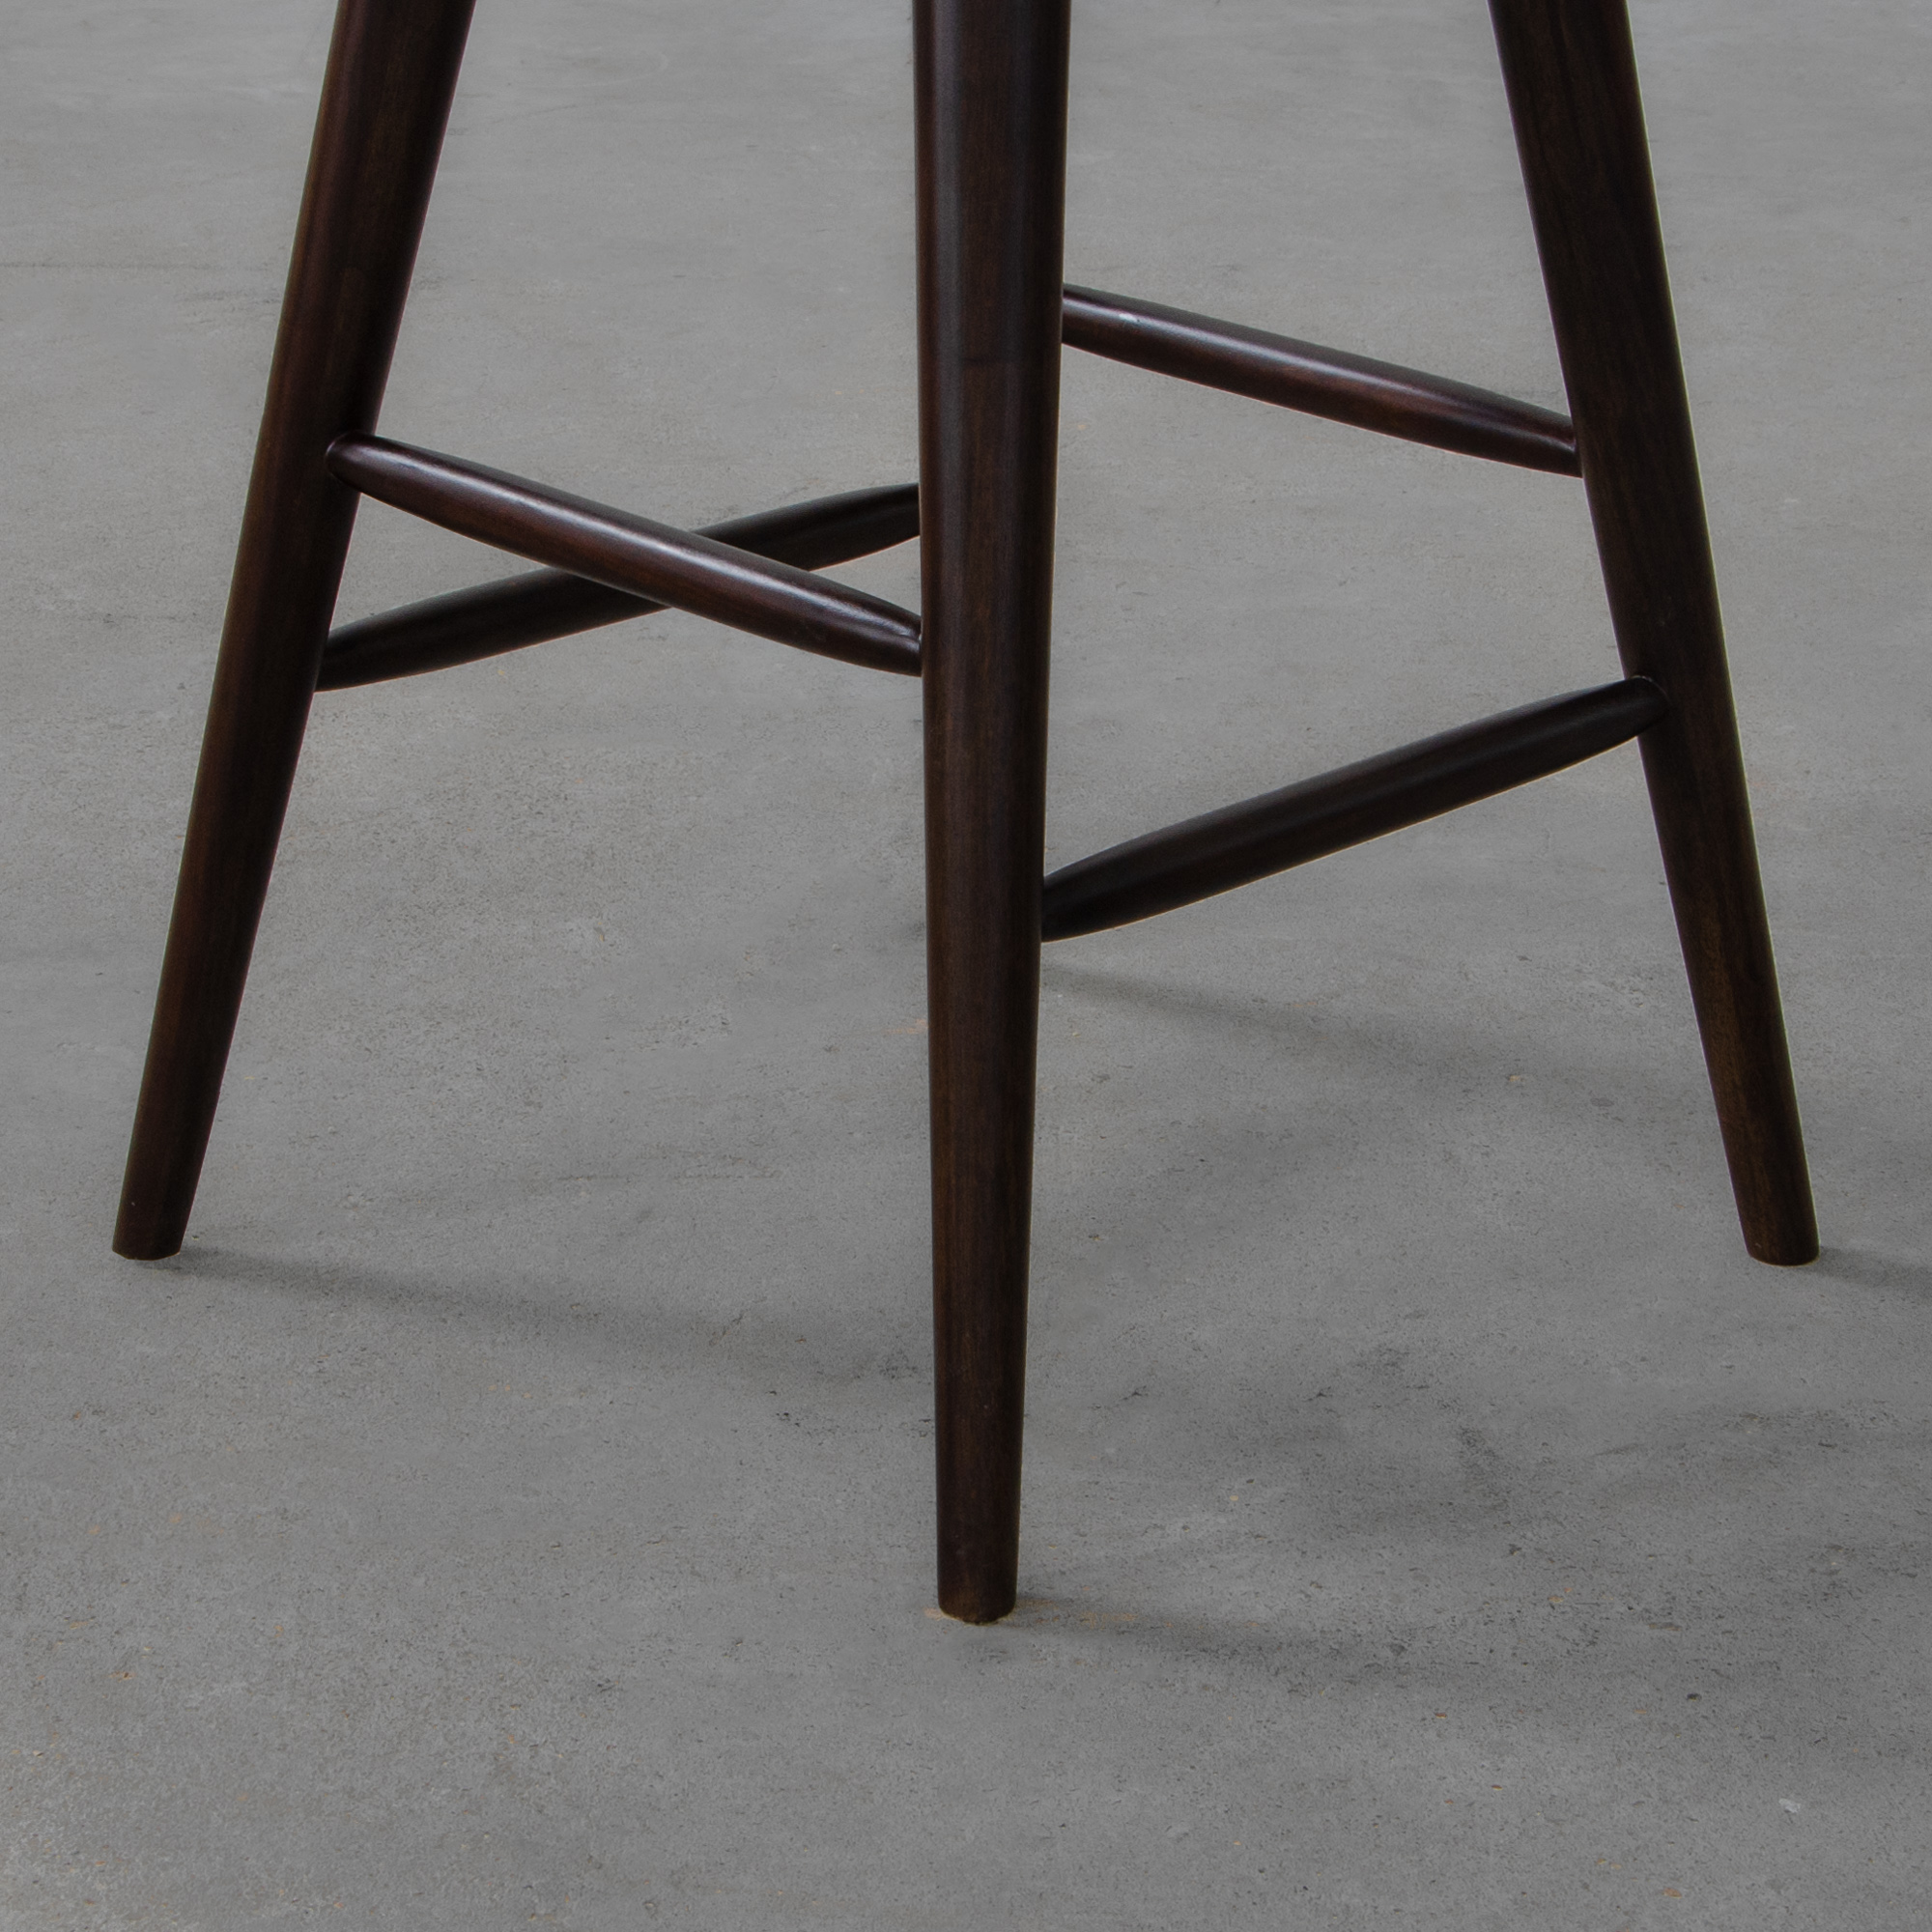 Corbett Bar Chair - Upholstered